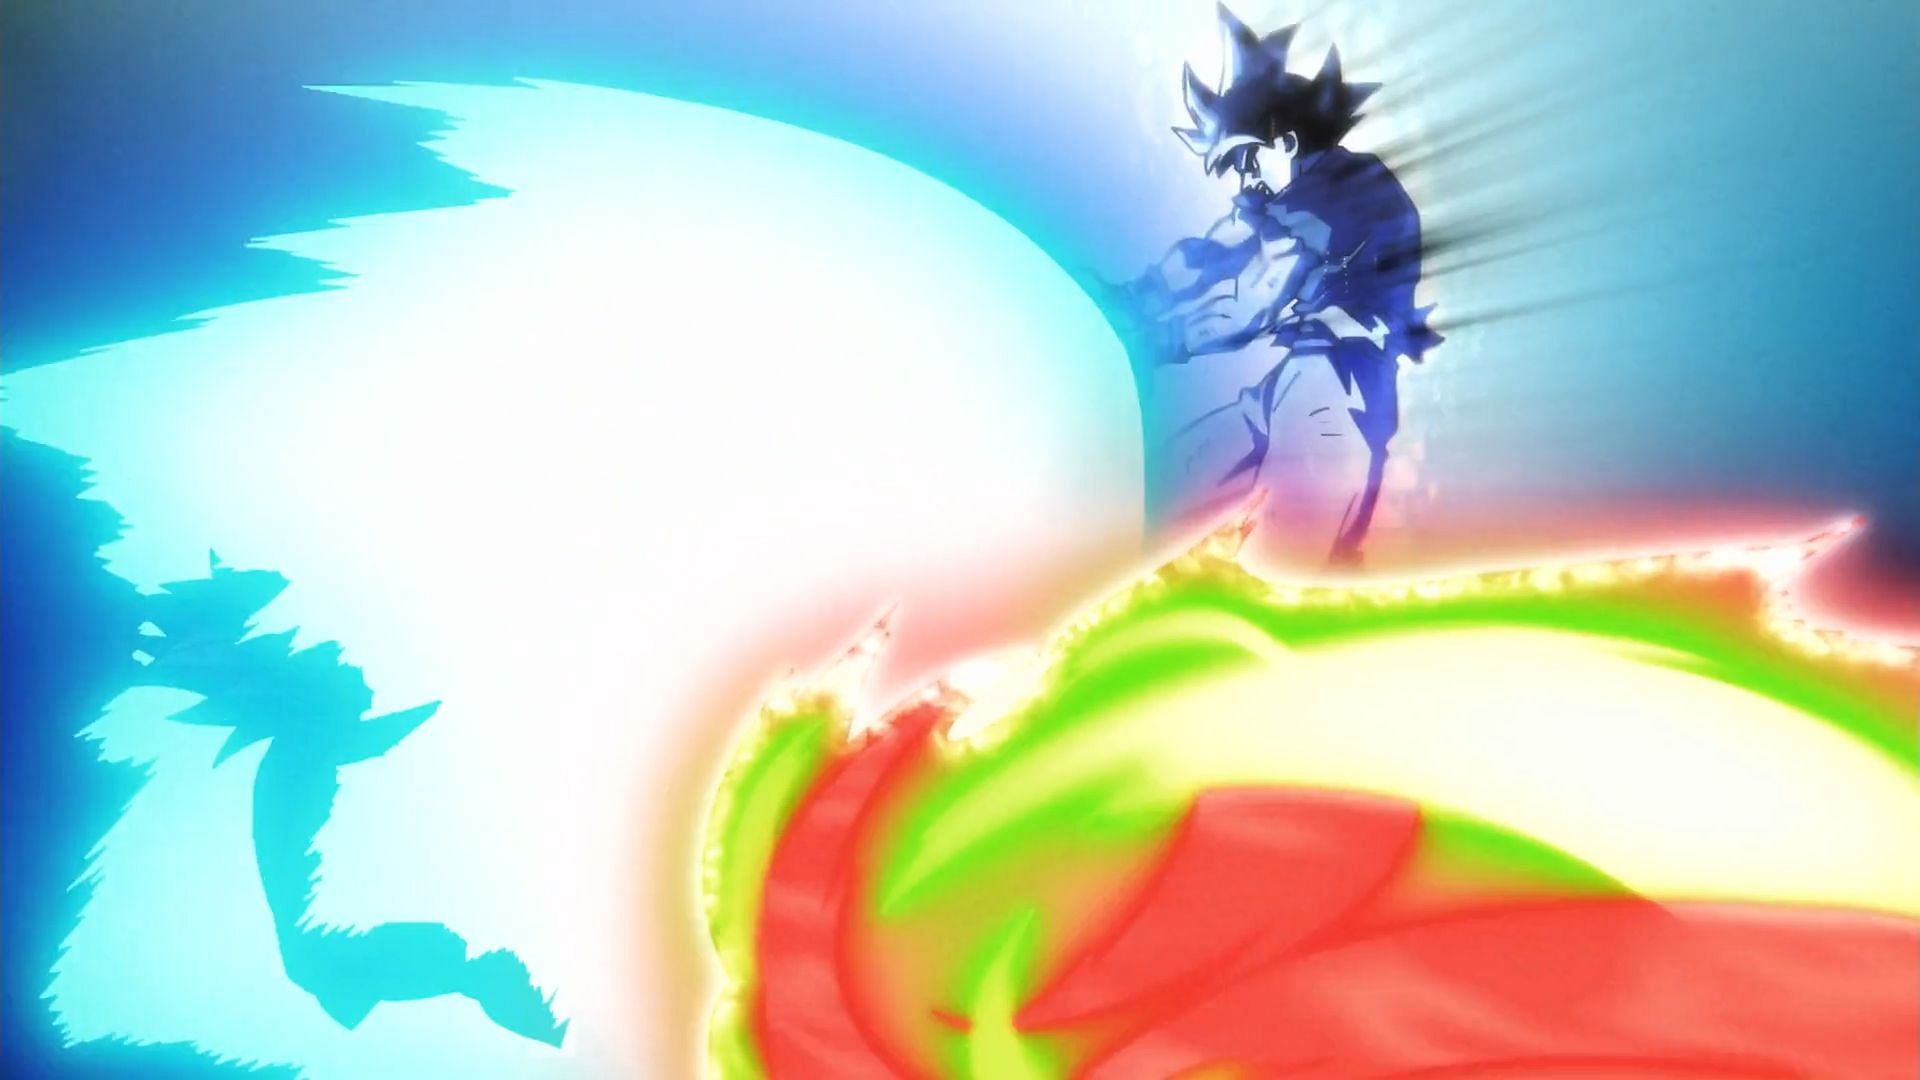 Goku has been using this move since he was a small child (Image via Akira Toriyama/Shueisha, Viz Media, Dragon Ball Super)